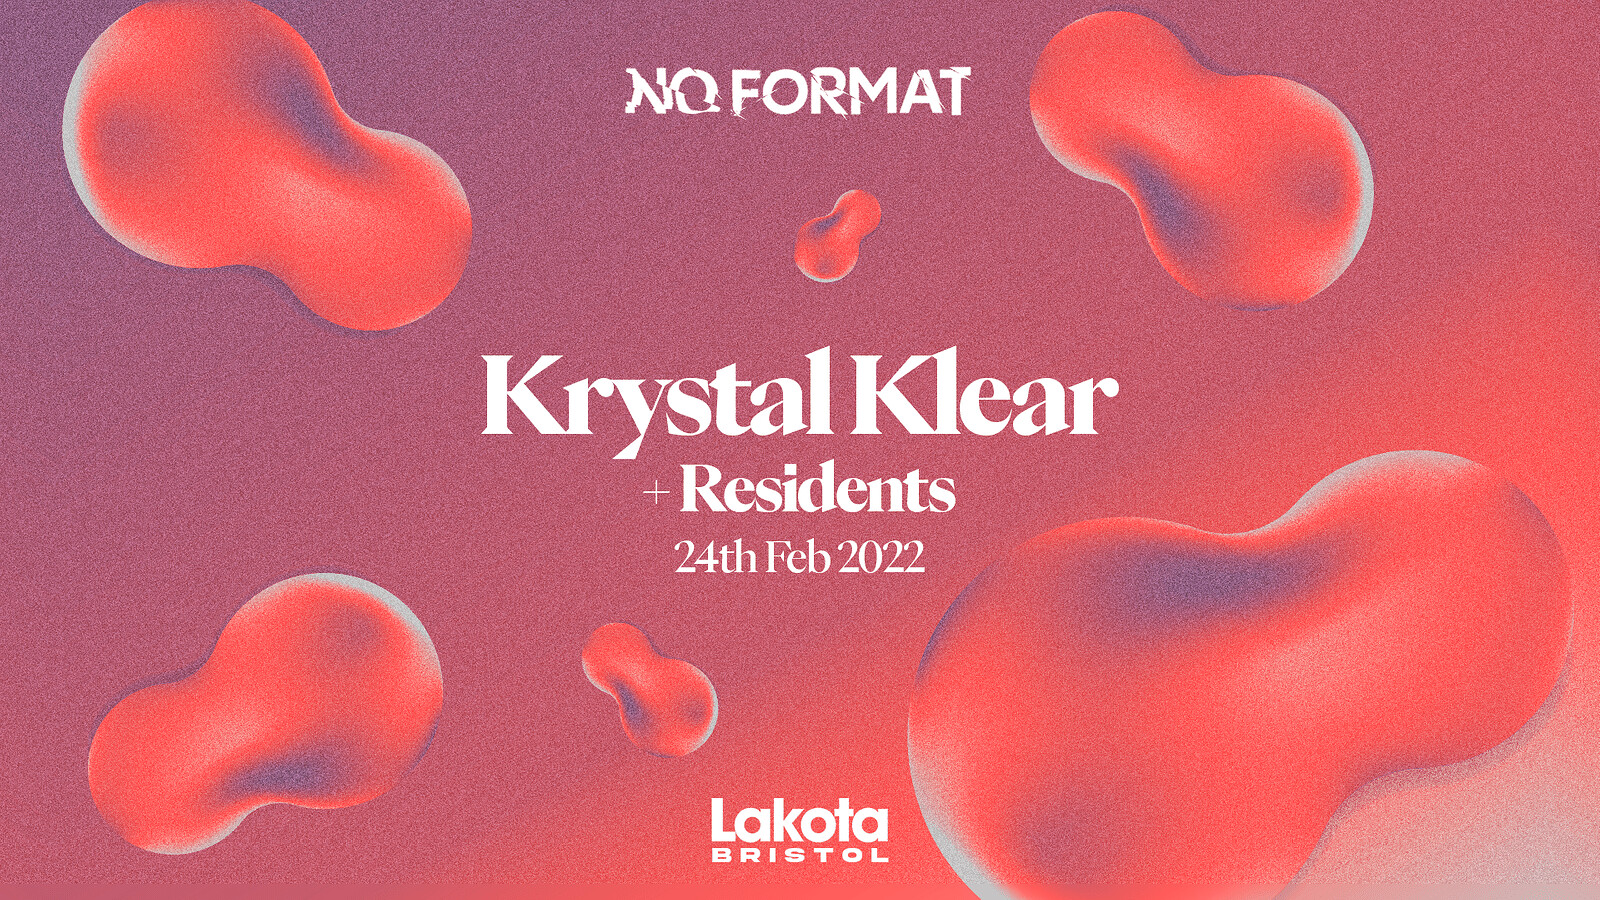 NoFormat Presents: Krystal Klear at Lakota